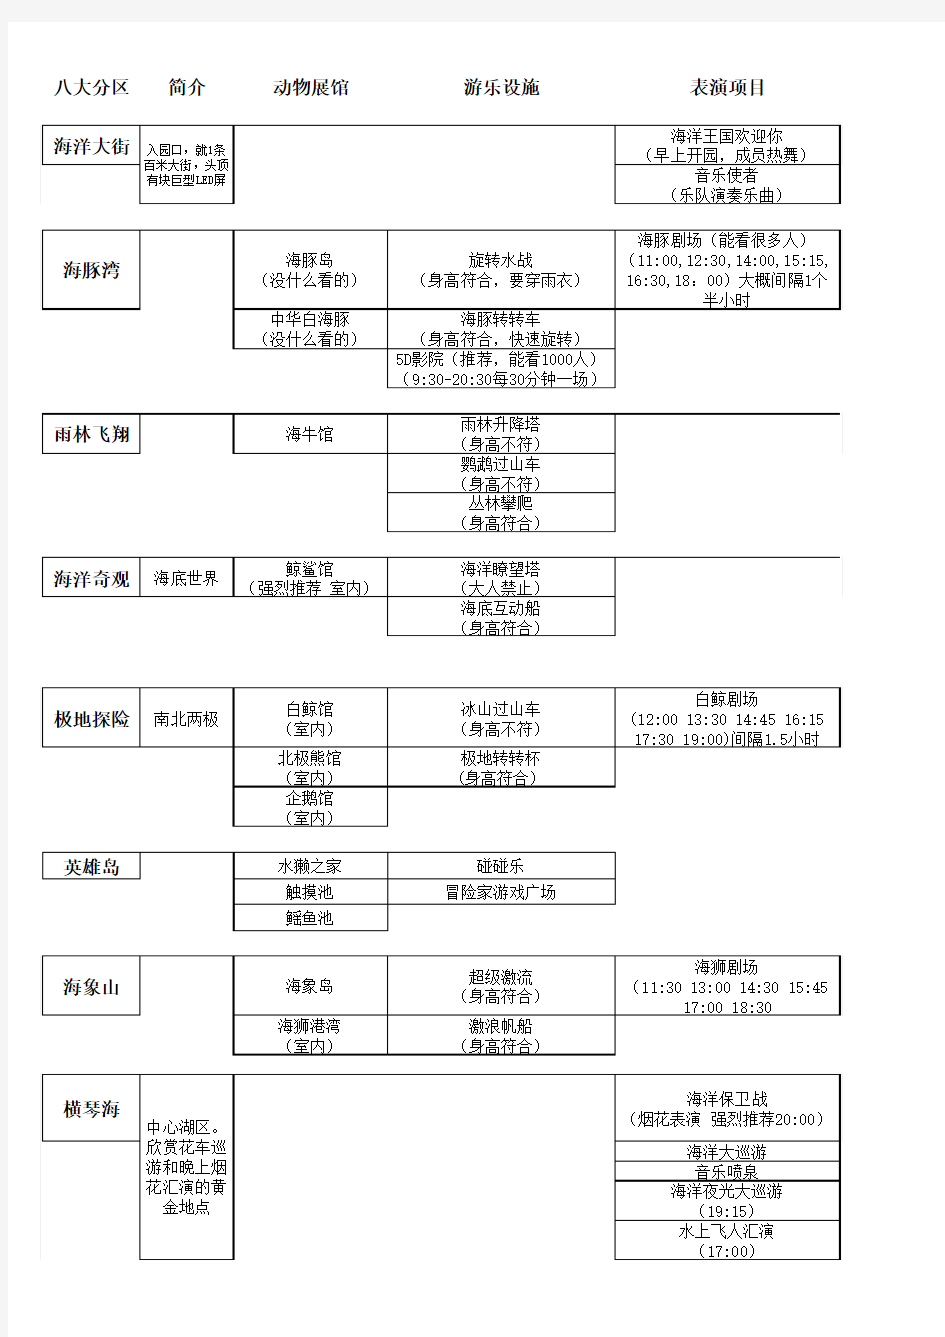 珠海长隆海洋王国游玩项目时间表